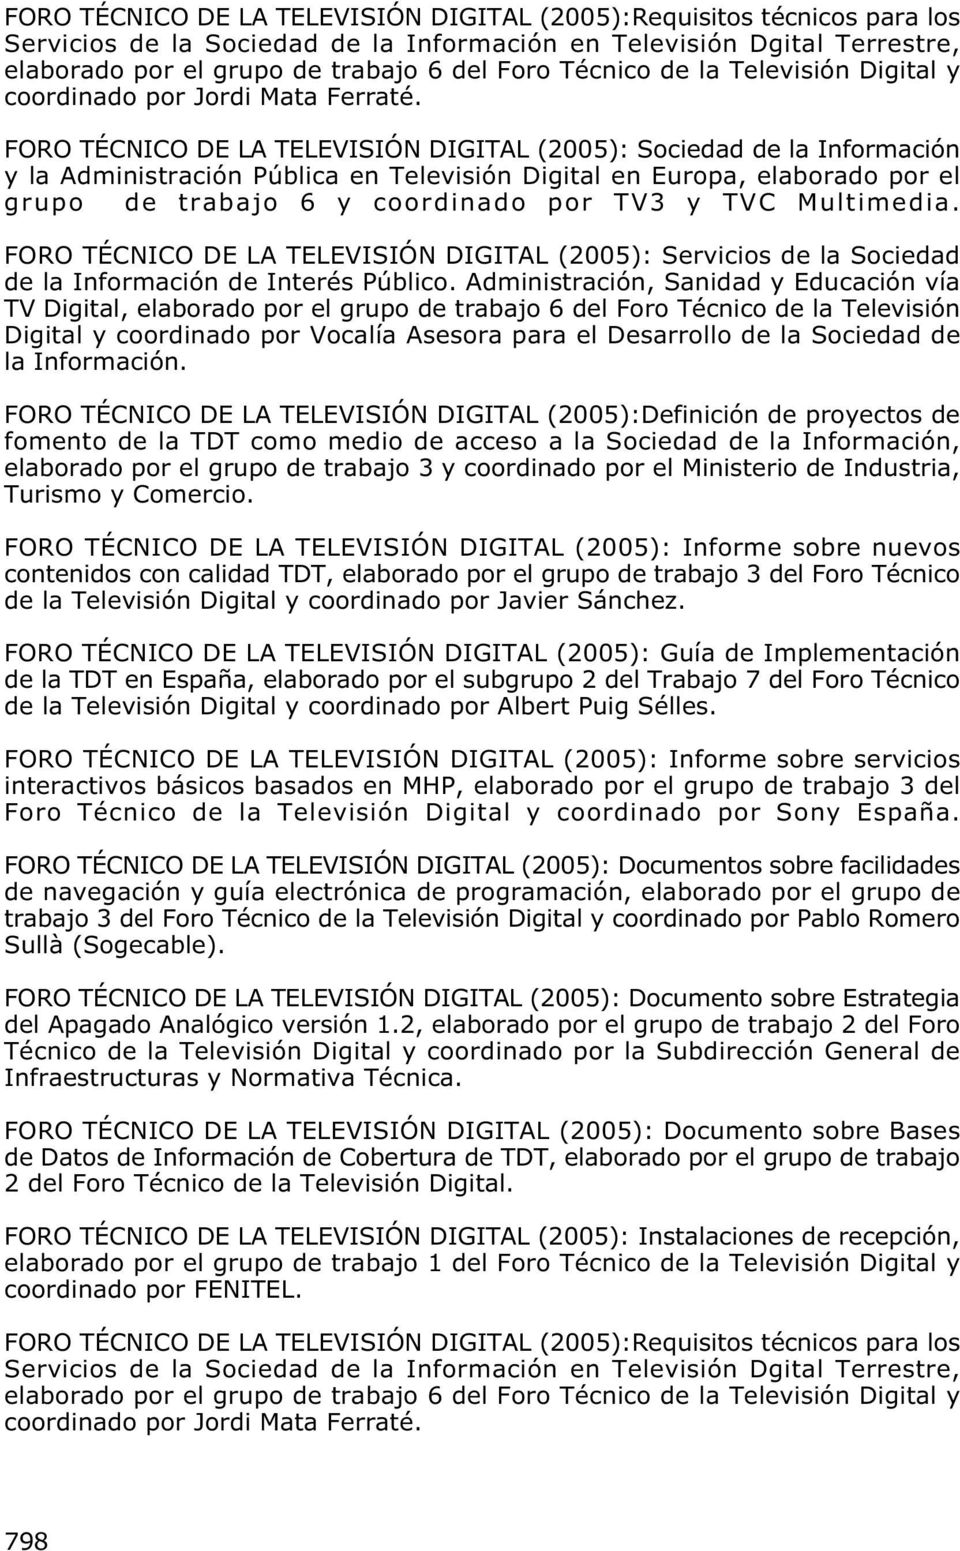 FORO TÉCNICO DE LA TELEVISIÓN DIGITAL (2005): Sociedad de la Información y la Administración Pública en Televisión Digital en Europa, elaborado por el grupo de trabajo 6 y coordinado por TV3 y TVC